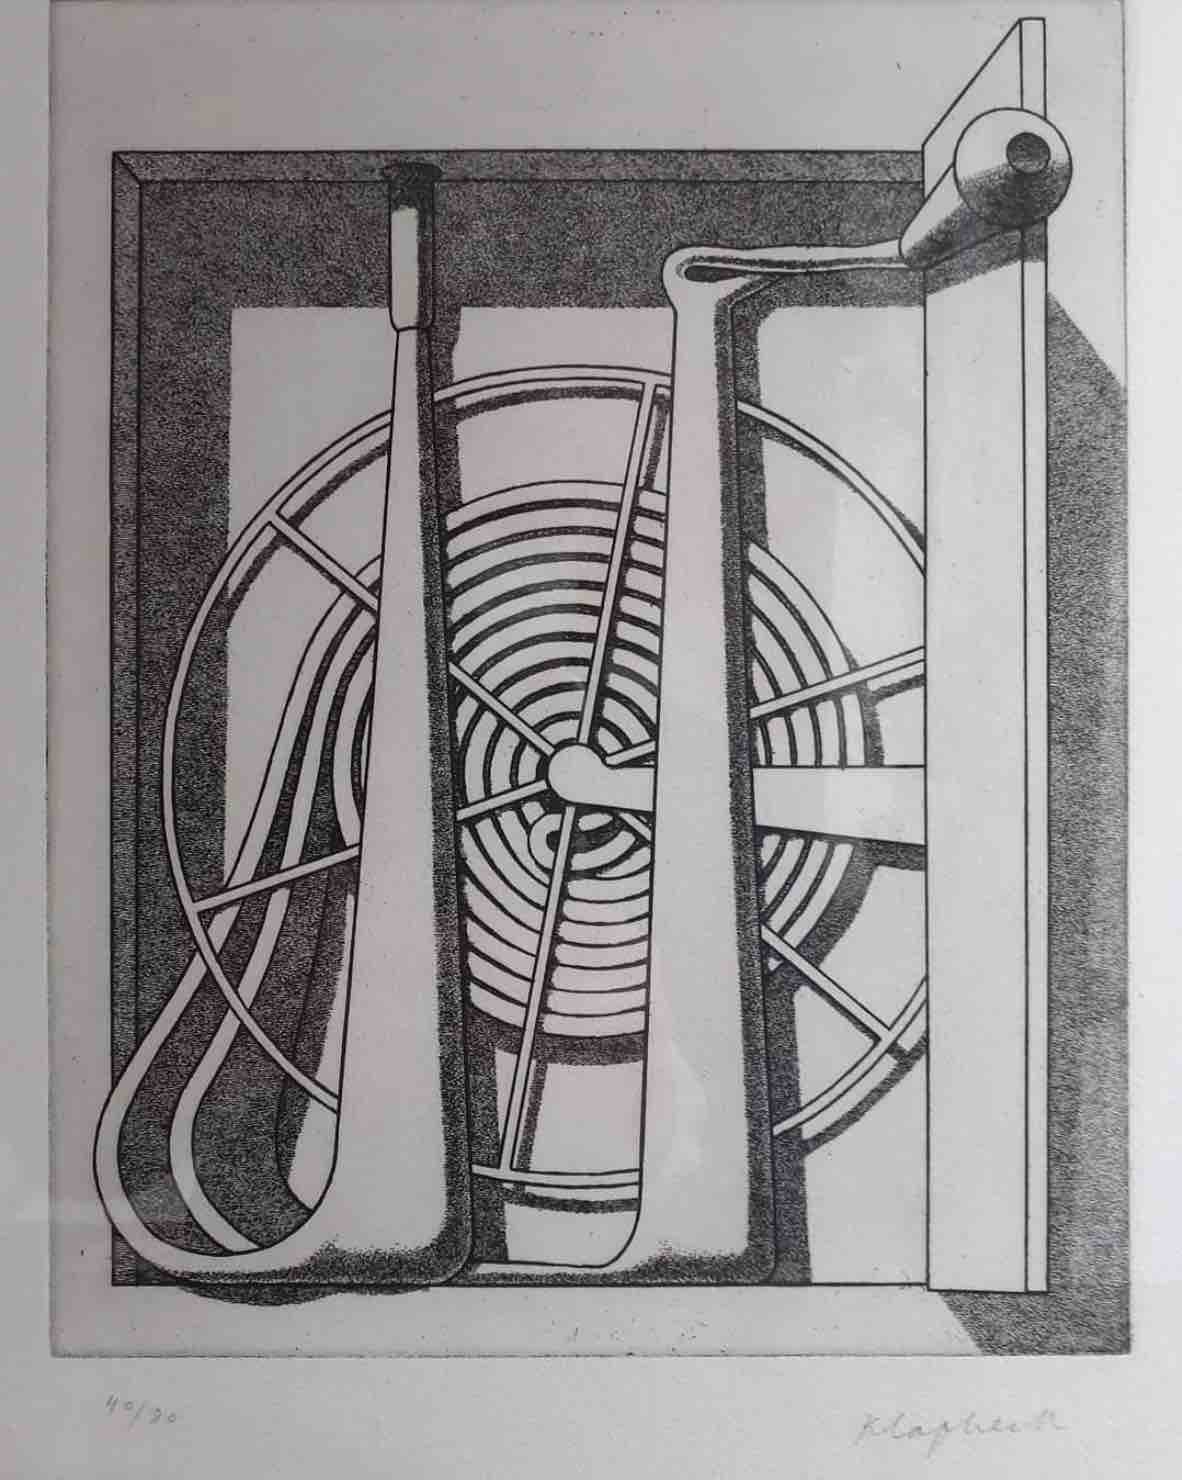 Gravure de Konrad Klapheck Reichtum 1976, qui représente un appareil imaginaire dont le fonctionnement à l'air mystérieux.